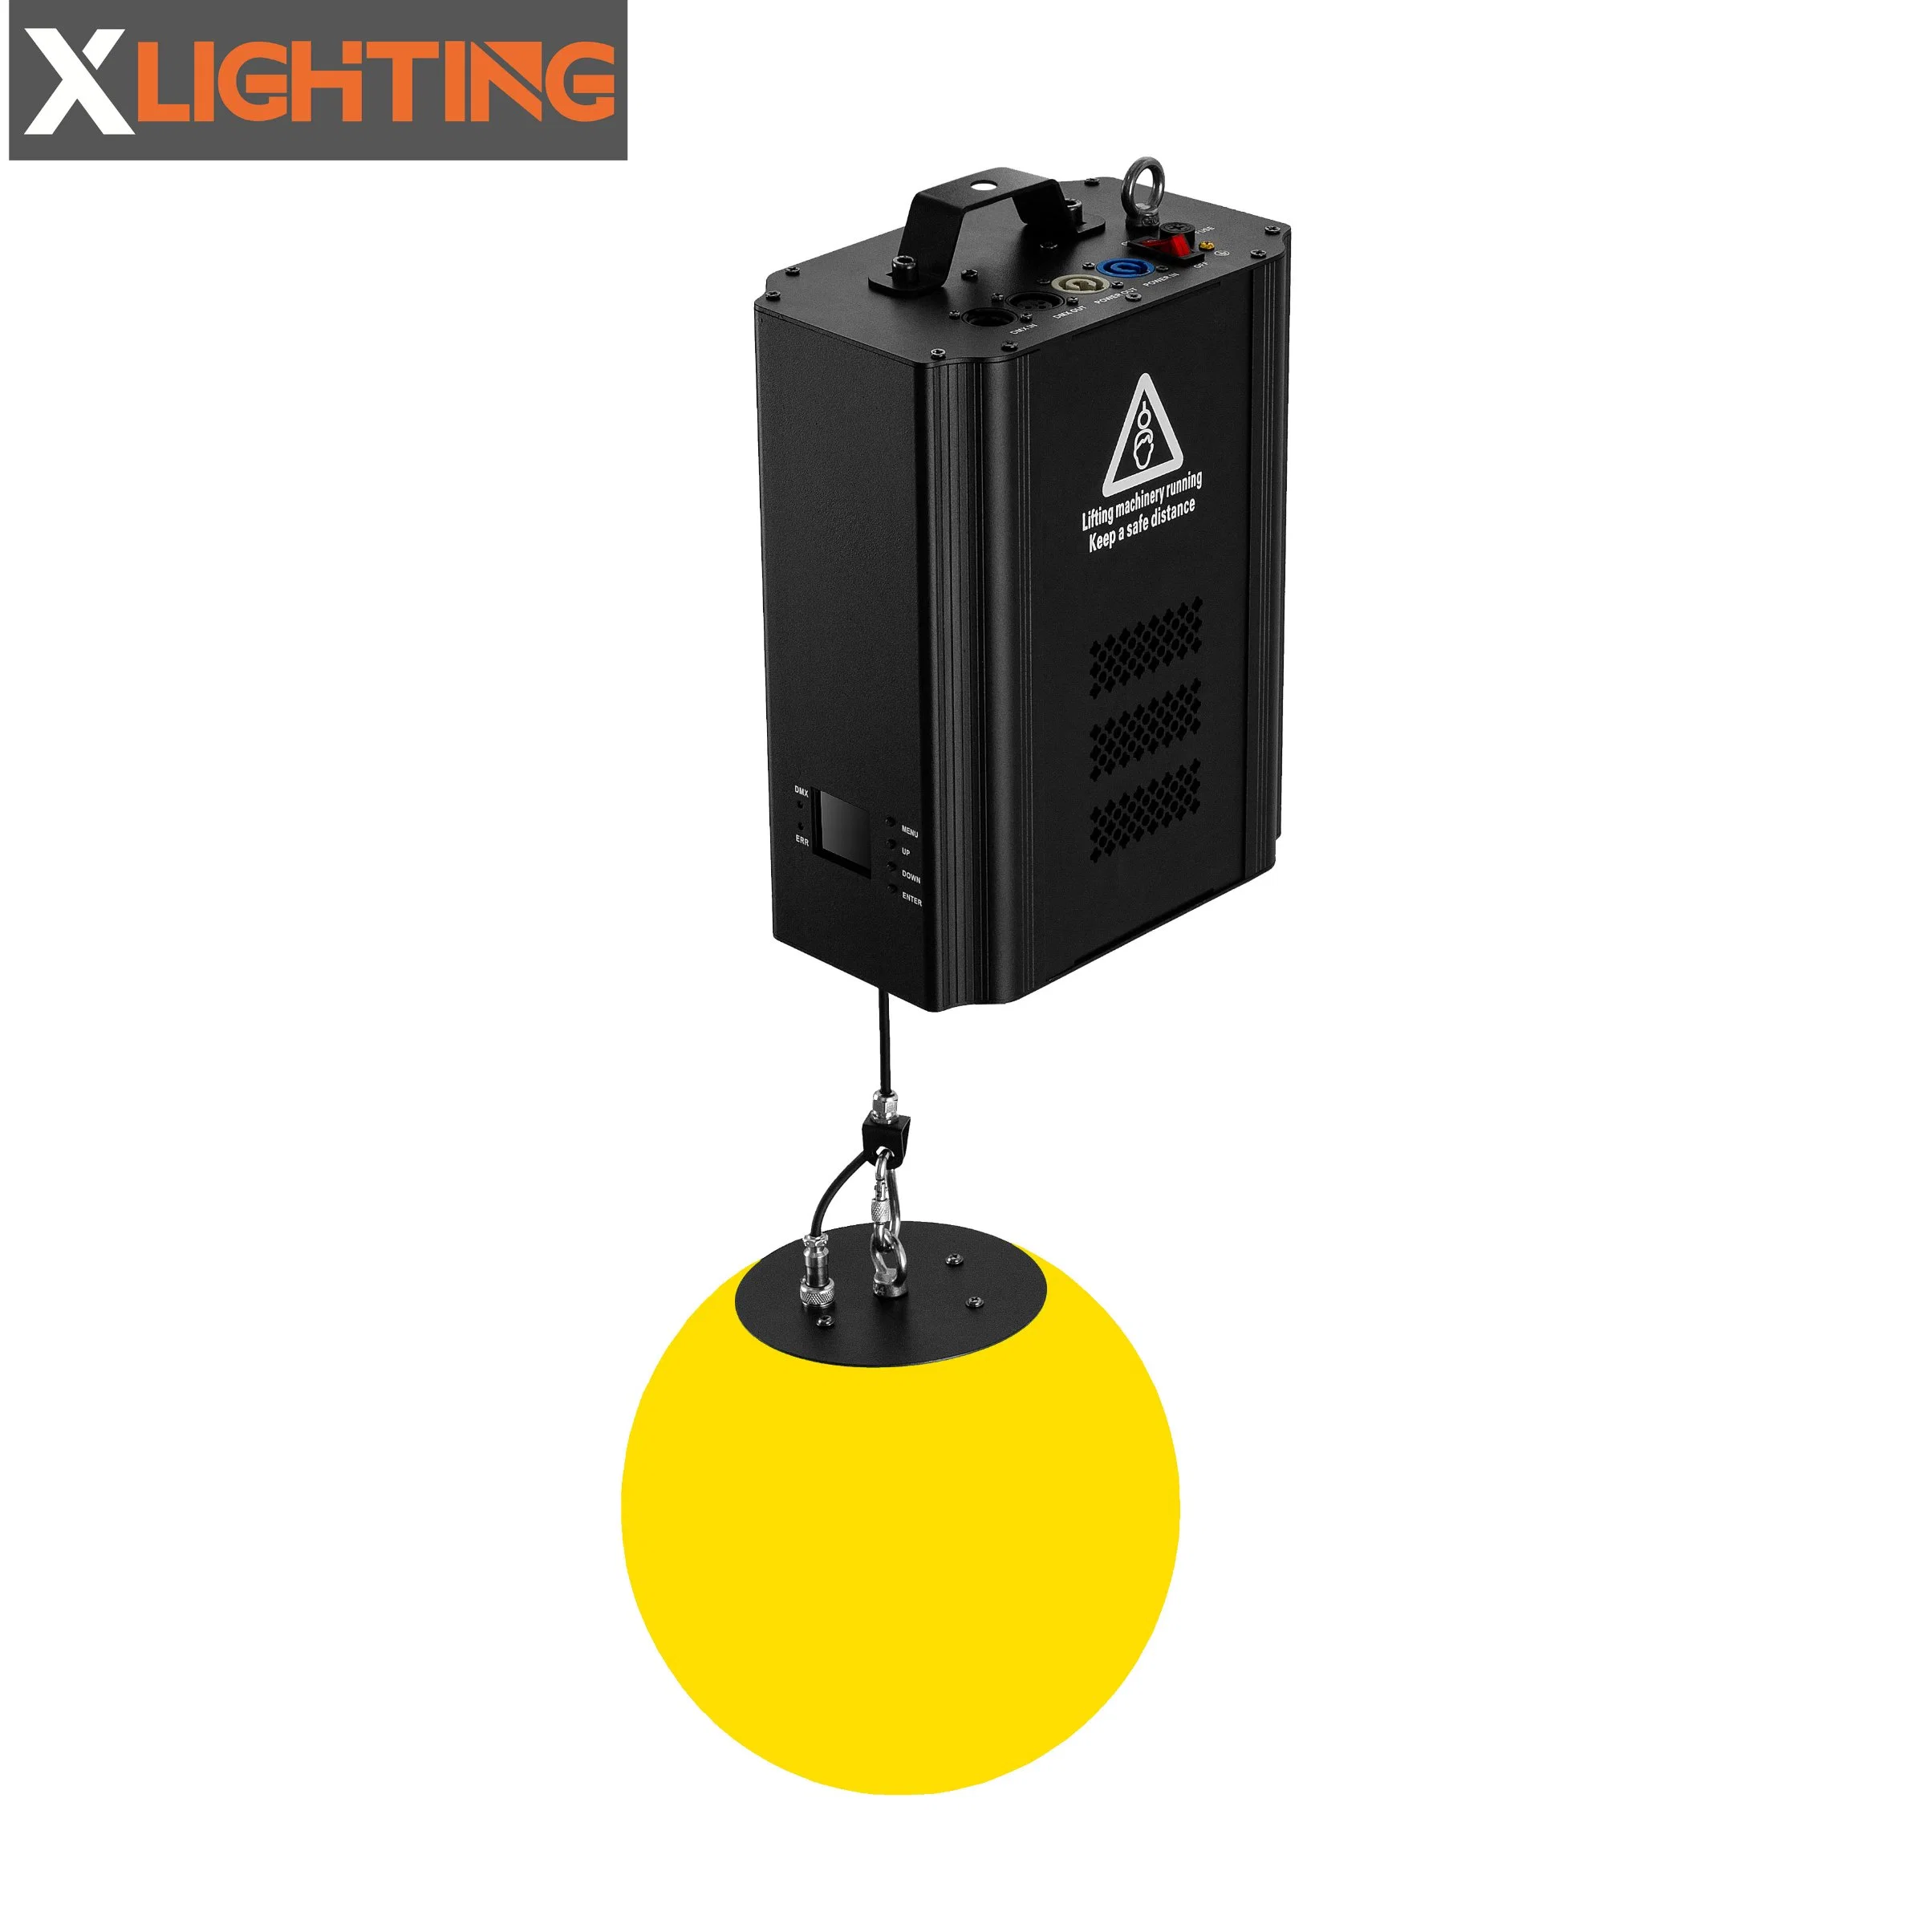  Color Kinetics Kinetic Lighting System Motor Colorful LED Lifting Ball